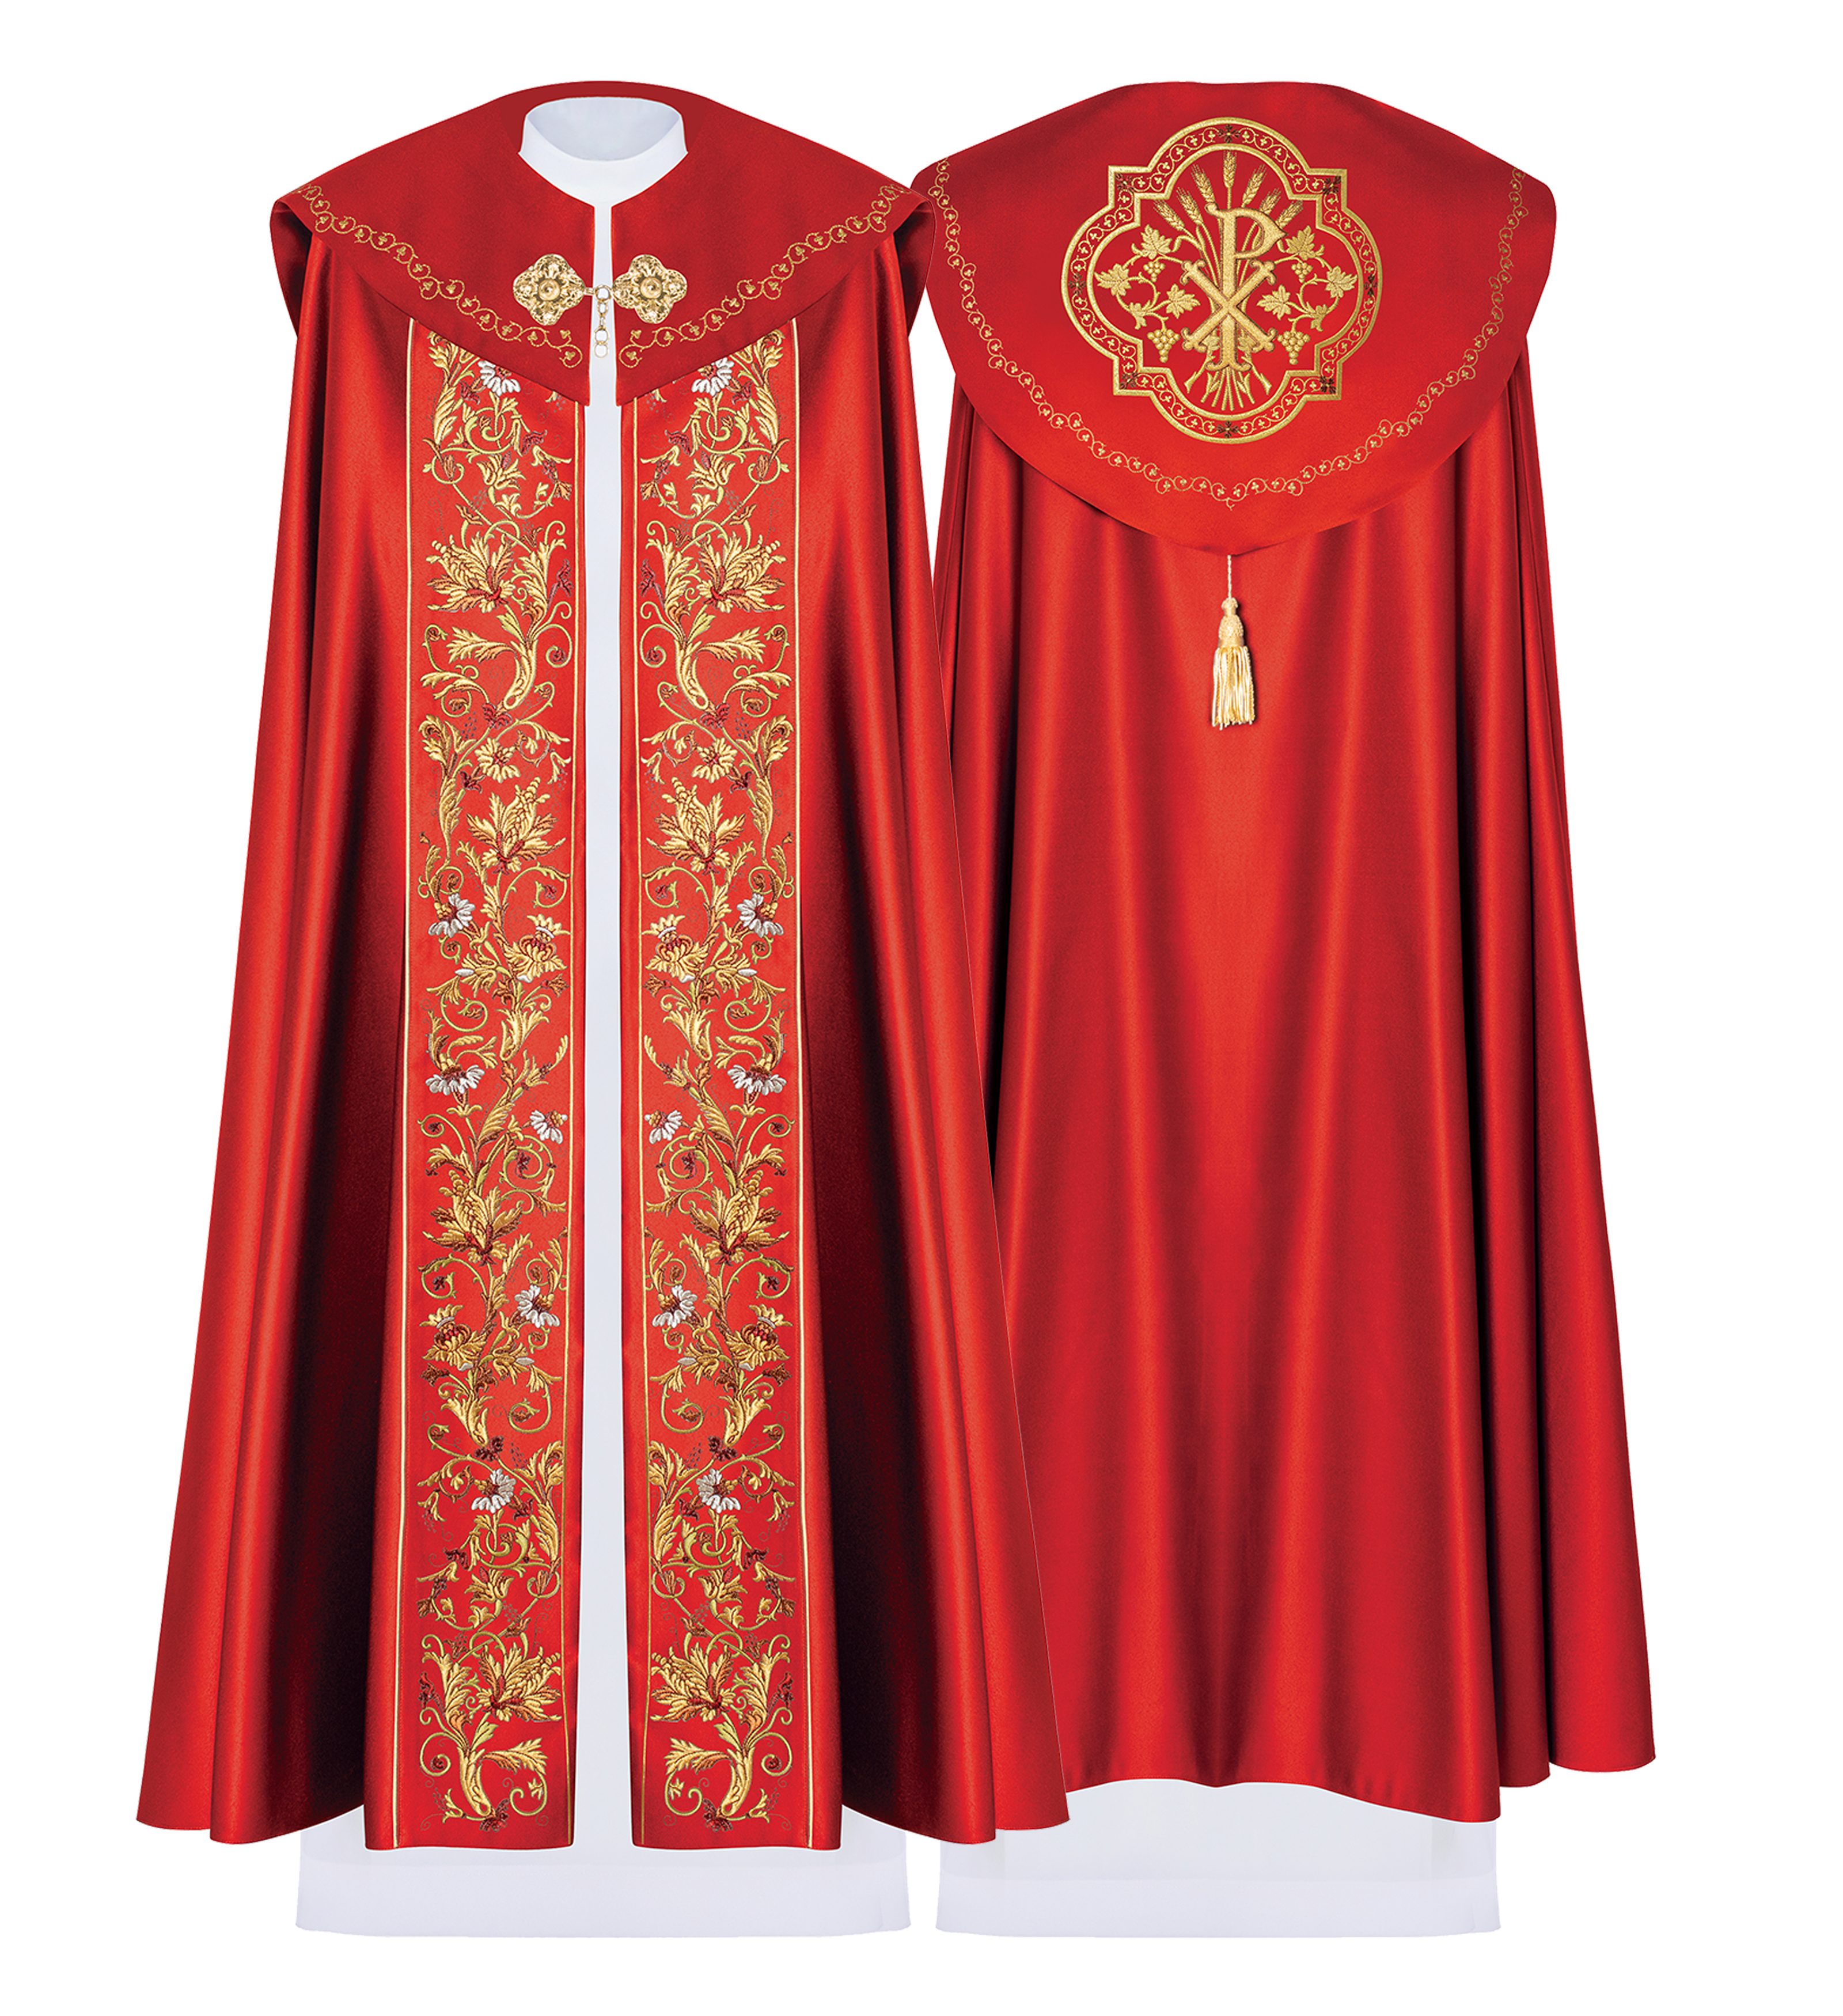 Kapa eucharystyczna z bogato zdobionym monogramem w kolorze czerwonym